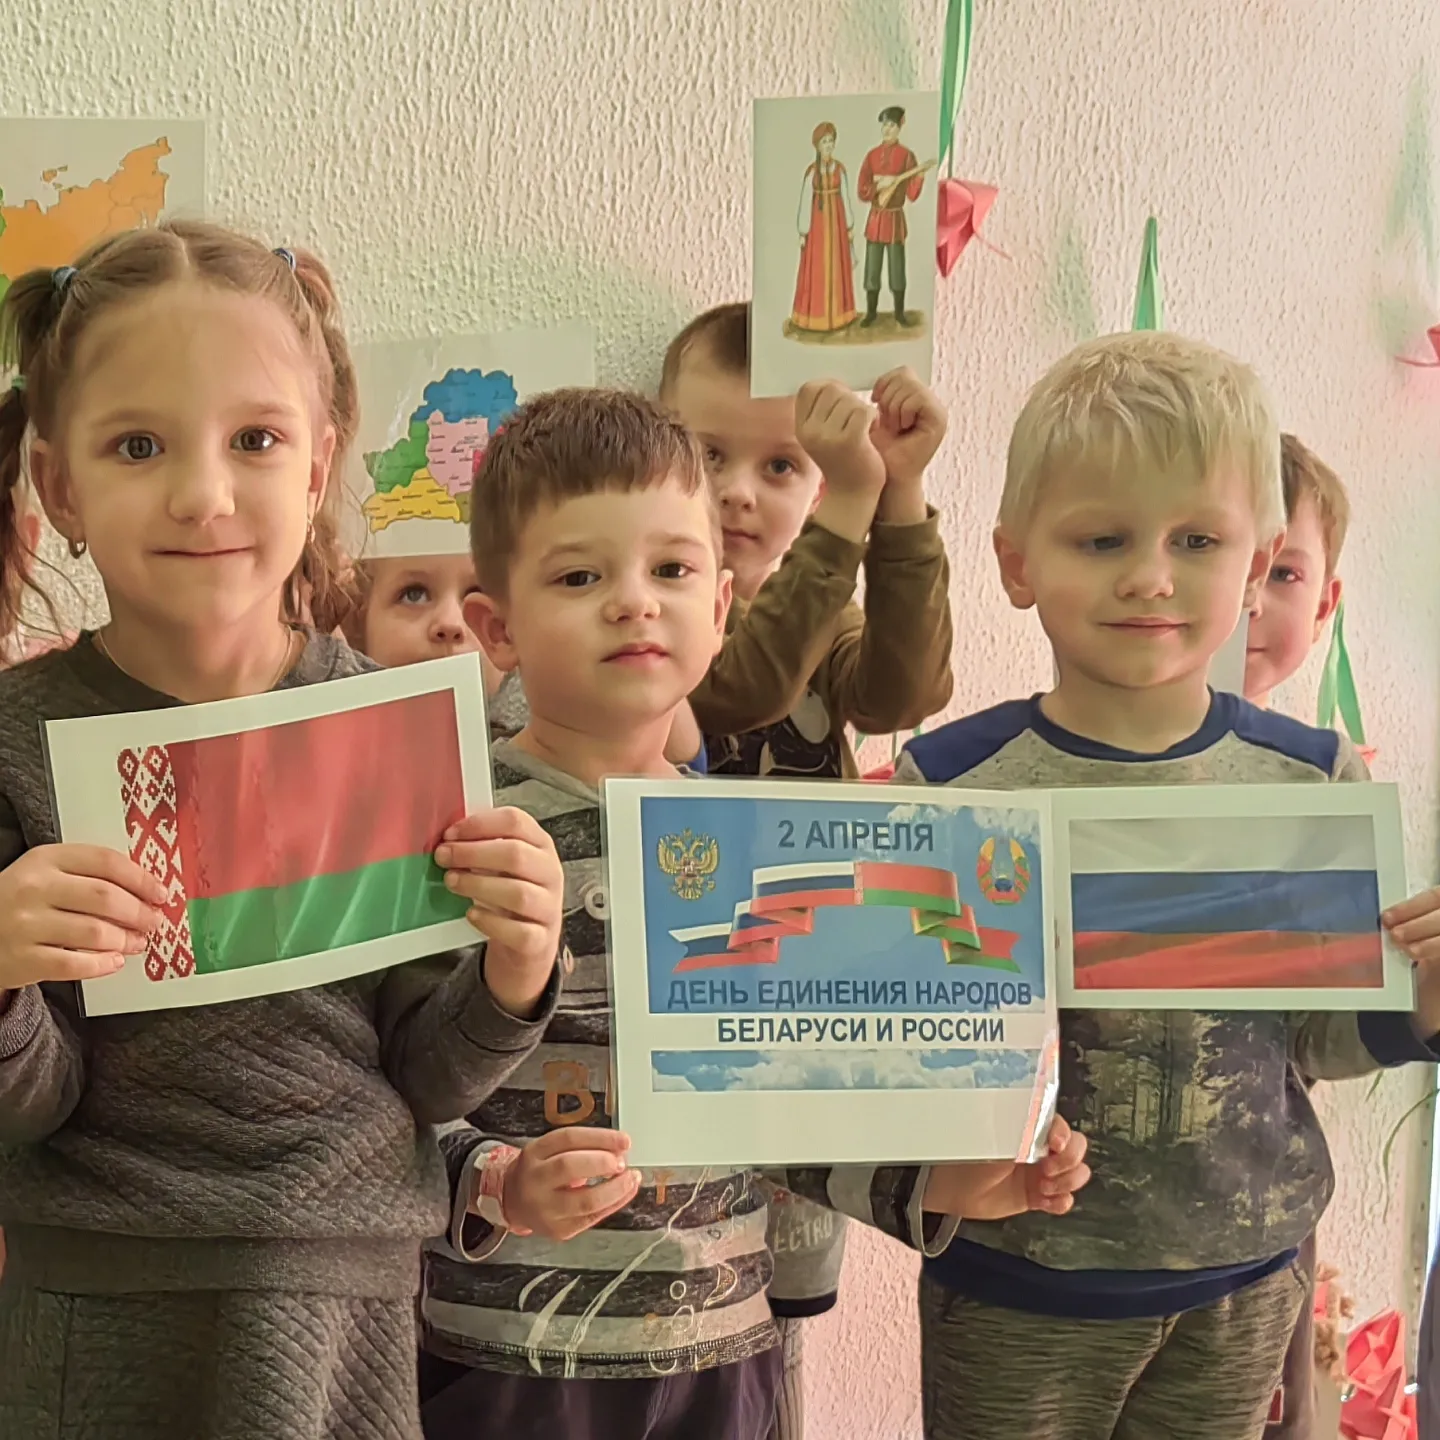 2 апреля День единения народов России и Беларуси